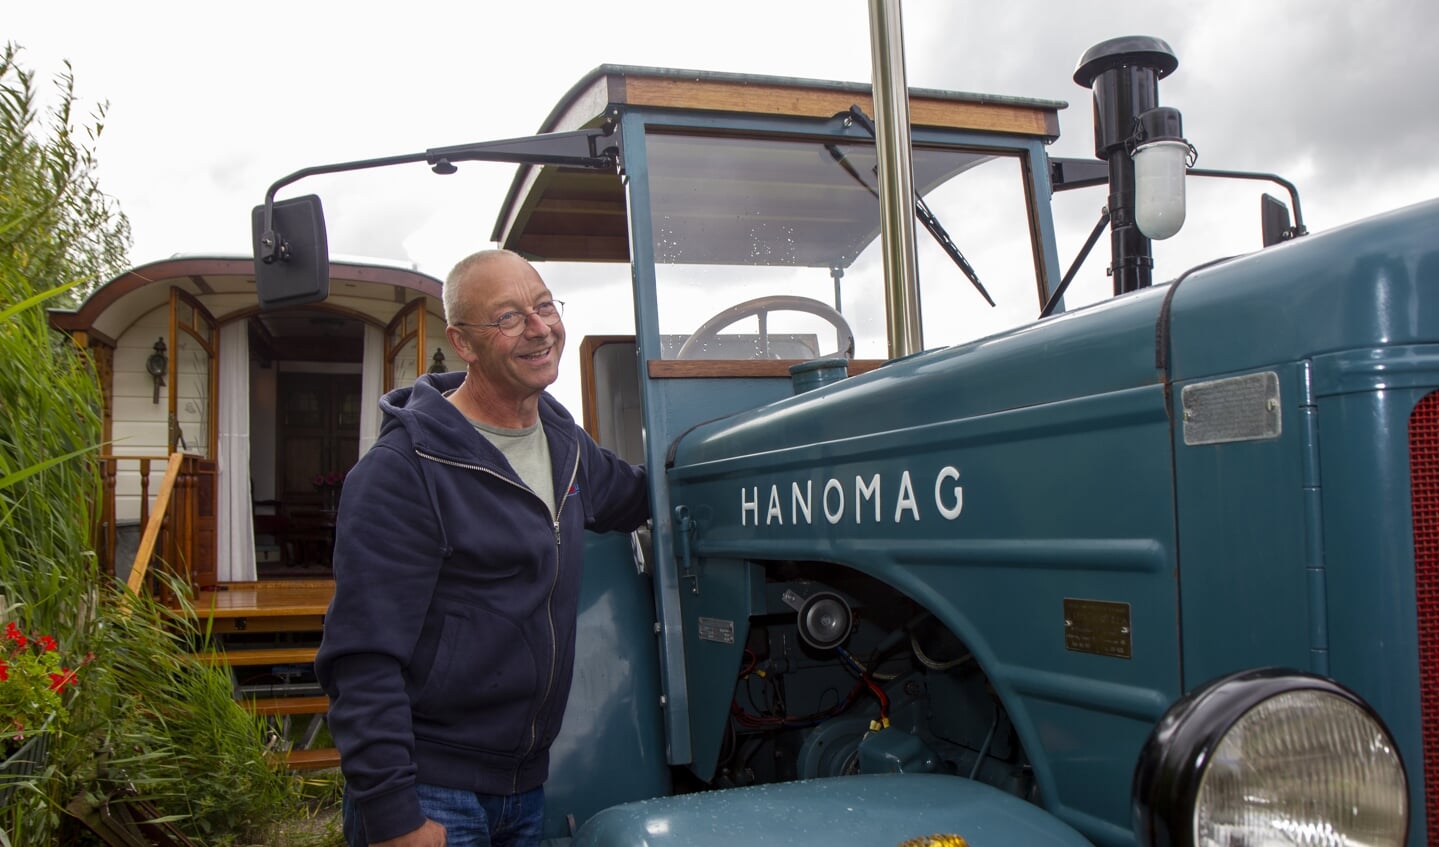 Het restaureren en gebruiken van
historische landbouwvoertuigen
is een hobby van Ed.